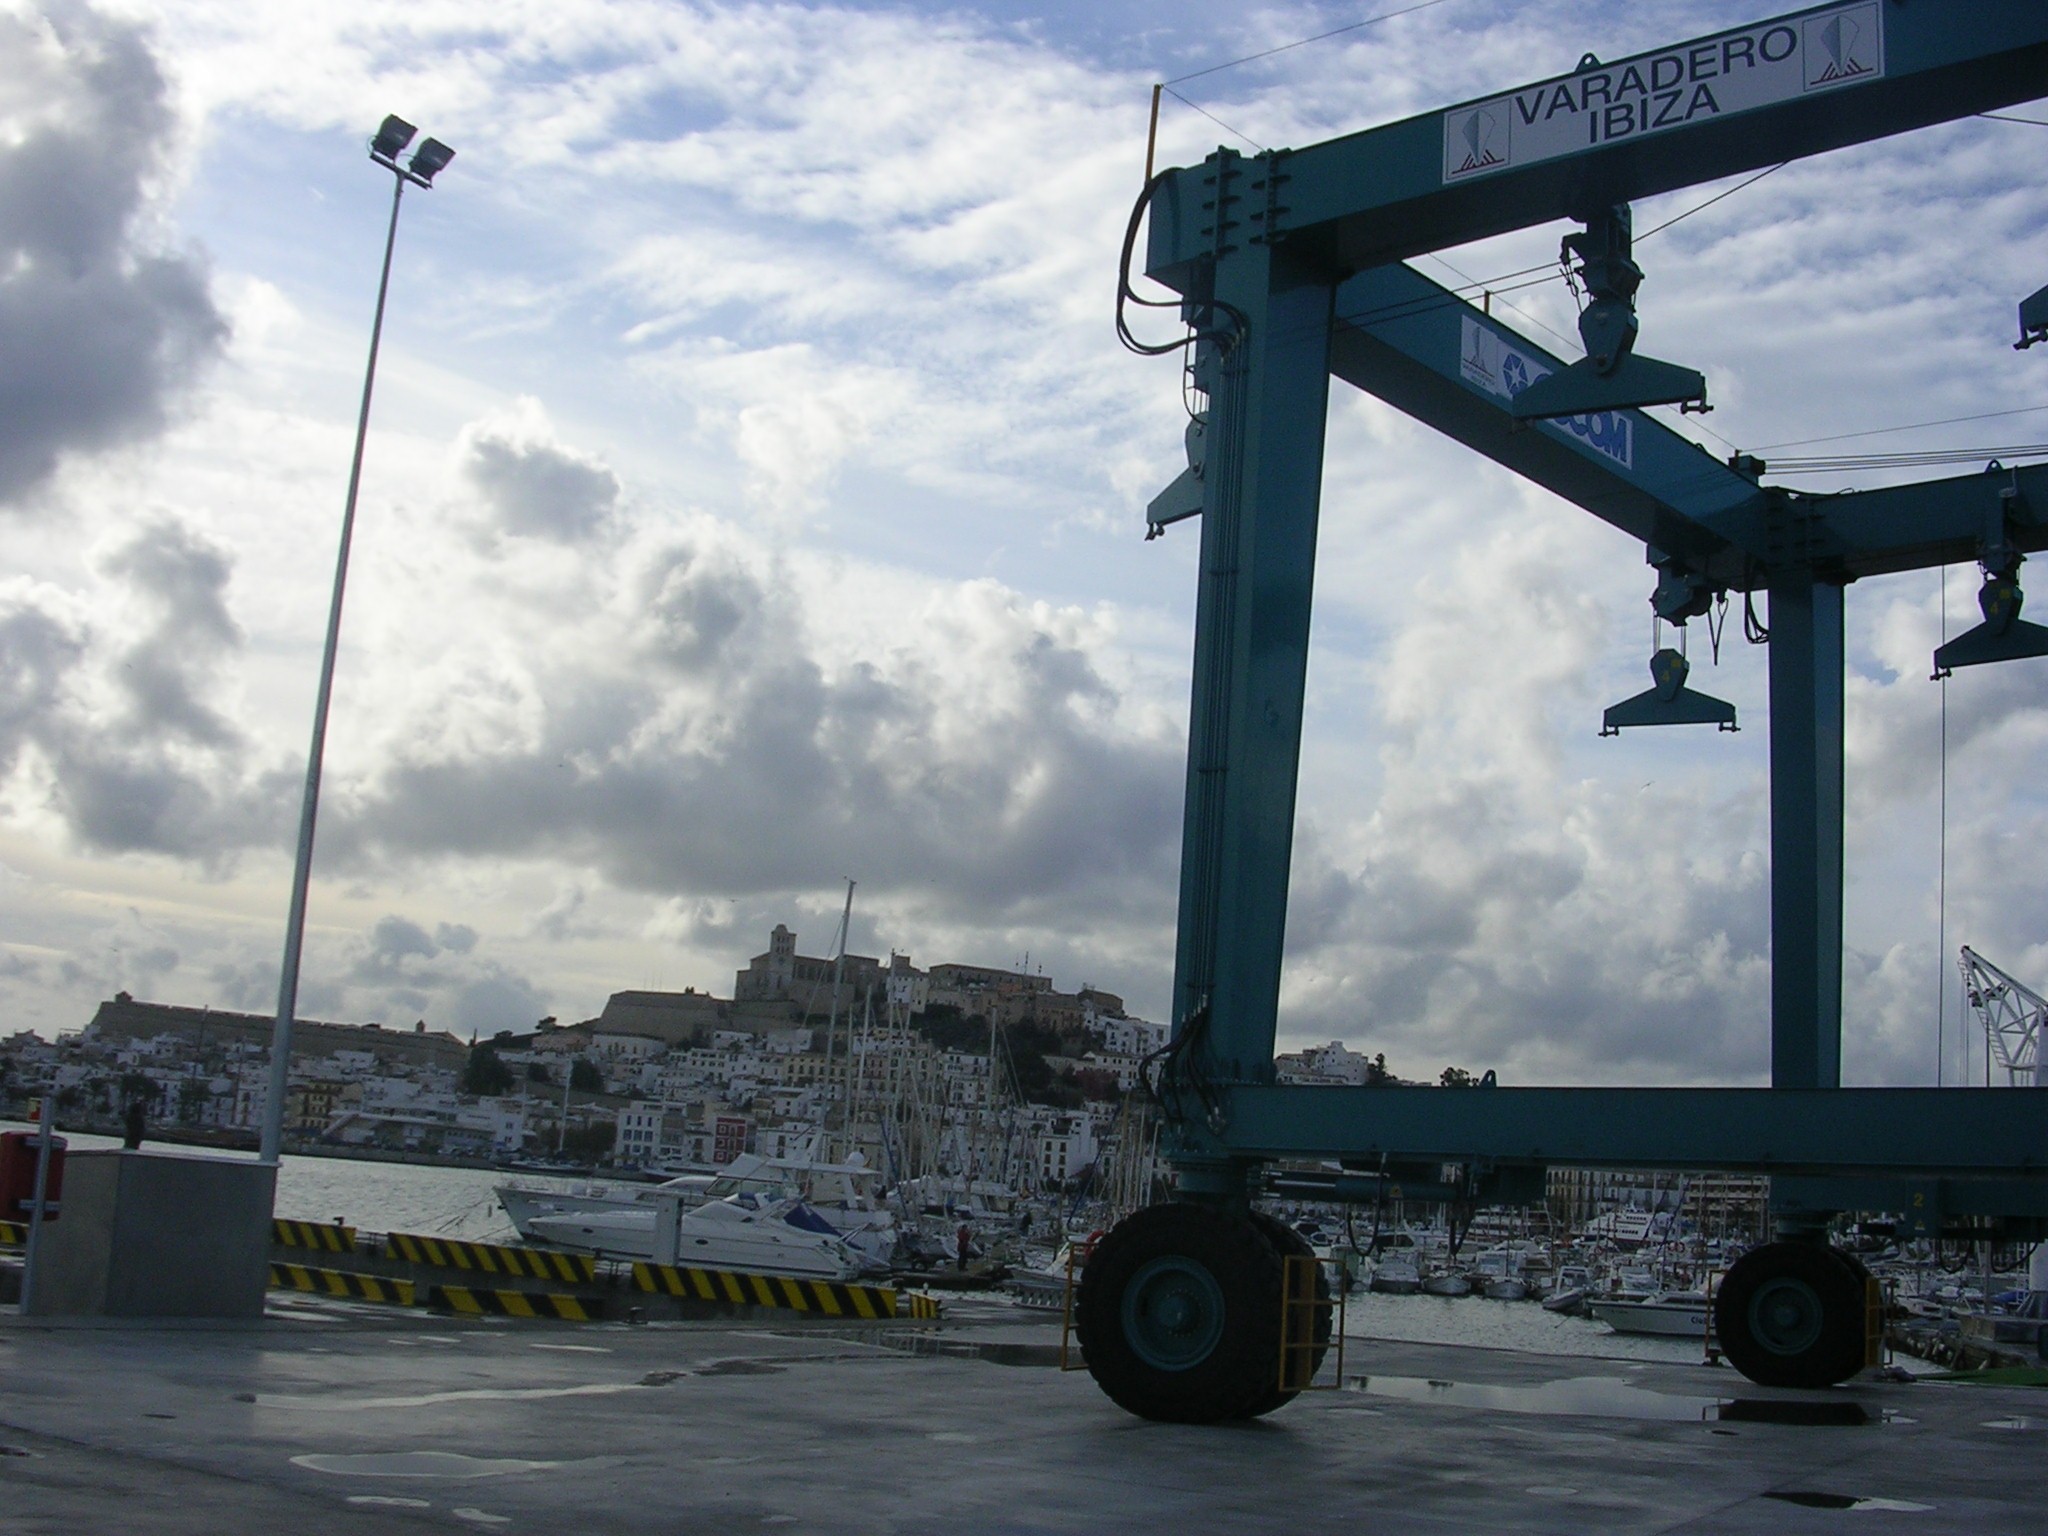 La APB saca a concurso por cuatro años el varadero adyacente al muelle pesquero del puerto de Eivissa